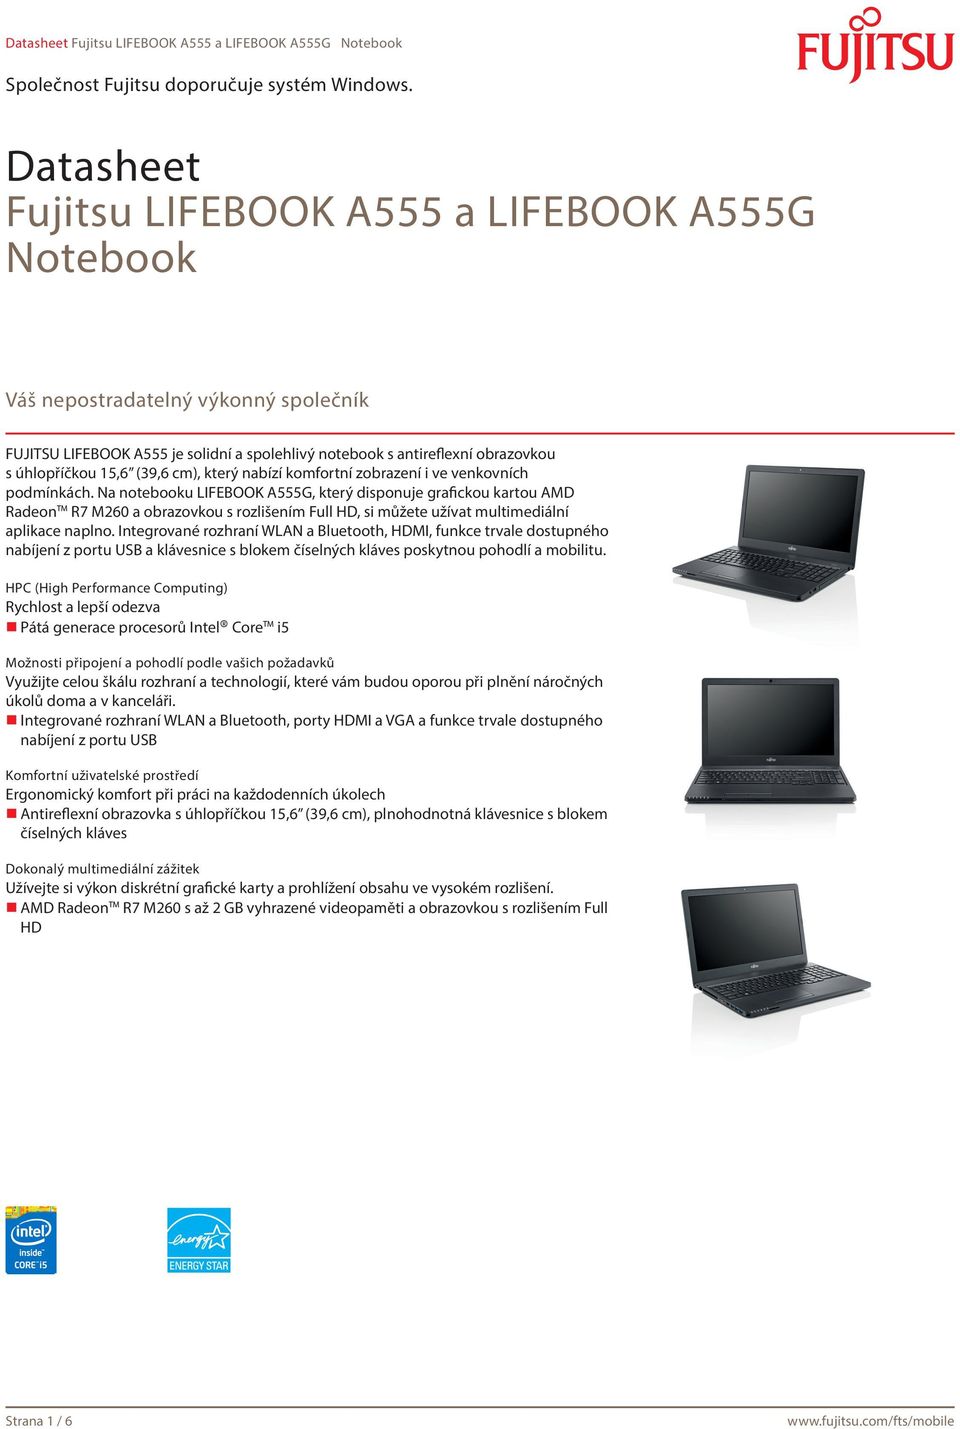 Na notebooku LIFEBOOK A555G, který disponuje grafickou kartou AMD Radeon R7 M260 a obrazovkou s rozlišením Full HD, si můžete užívat multimediální aplikace naplno.